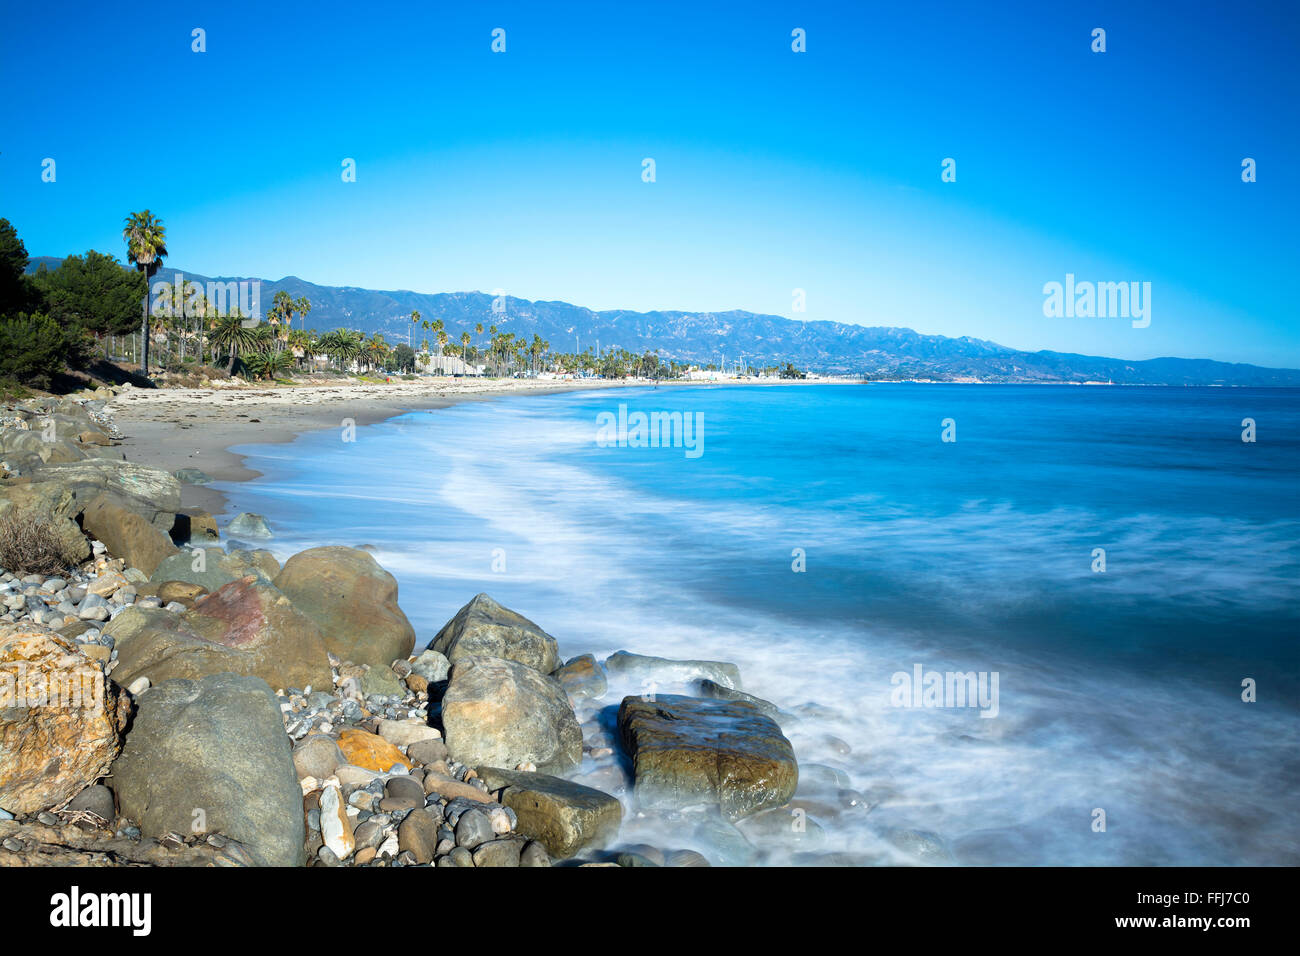 Immagine di una lunga esposizione durante un periodo dove le onde si stanno avvicinando a una spiaggia sabbiosa e rocciosa spiaggia di Santa Barbara in California Foto Stock